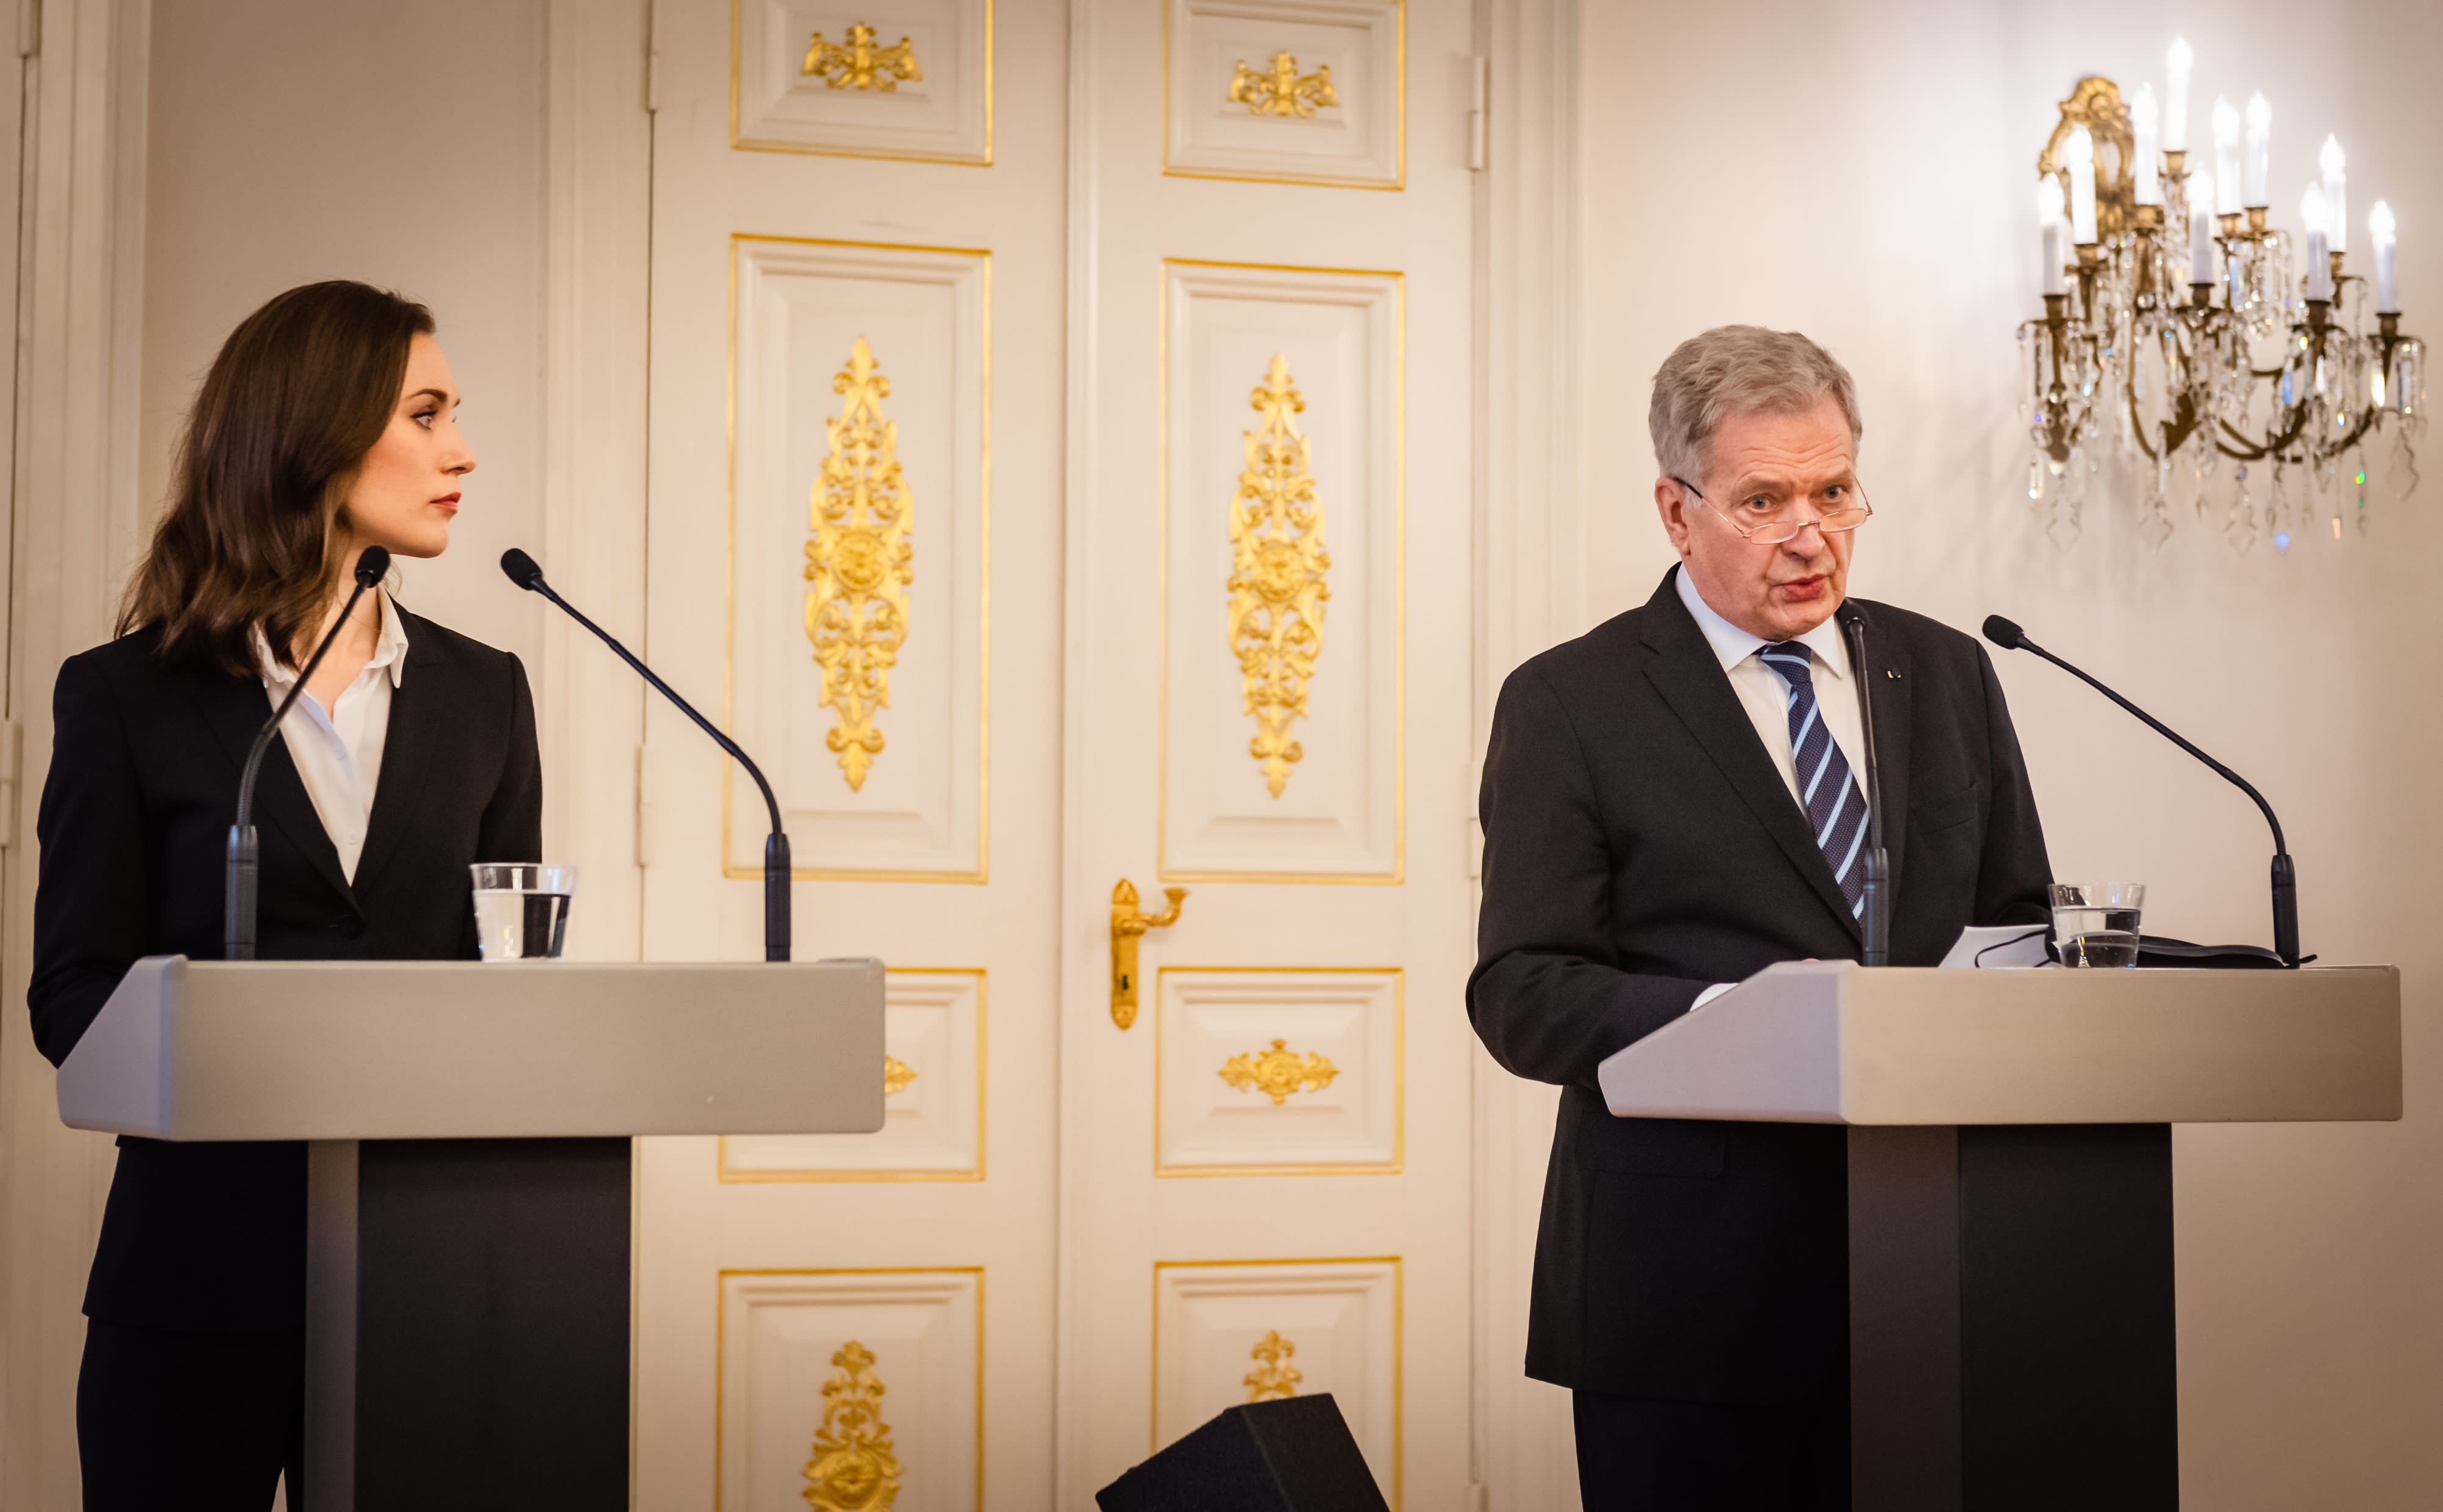 サウリ・ニーニスト大統領とサンナ・マリン首相はミュンヘン安全保障会議に向かった